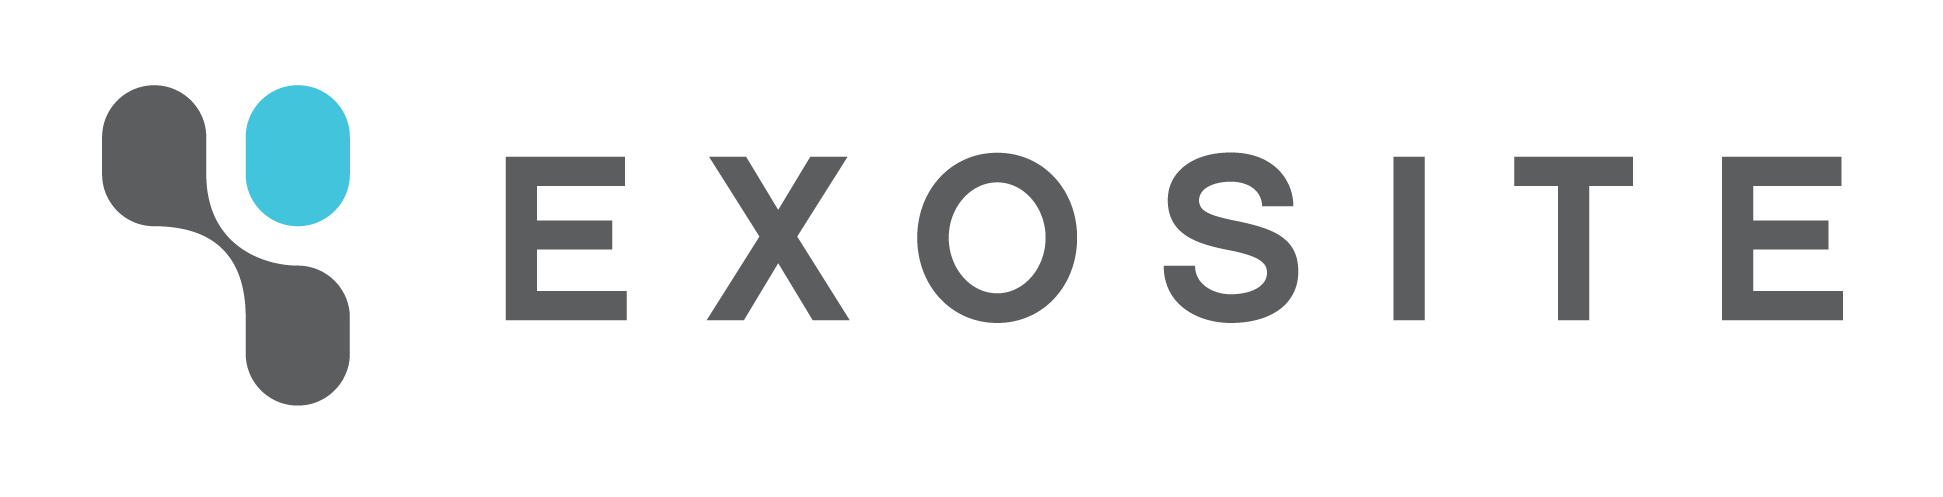 Exosite_logo